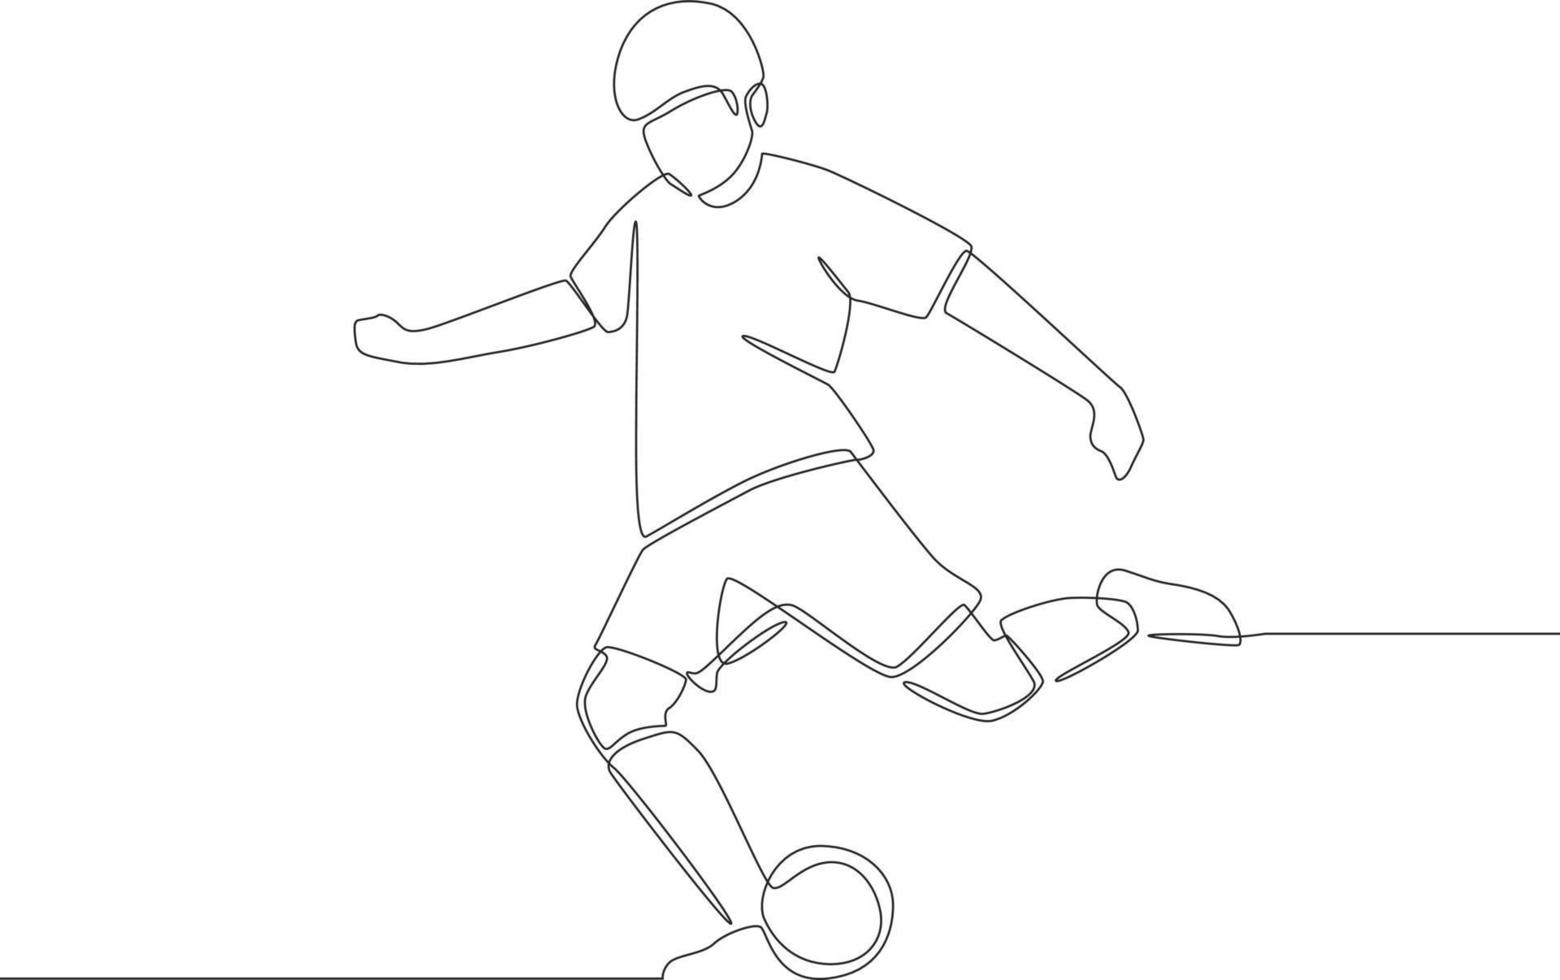 fortlaufende einzeilige zeichnung des professionellen fußballspielers in aktion isolierter weißer hintergrund. moderne einzeilige zeichnen design vektorgrafik illustration. vektor